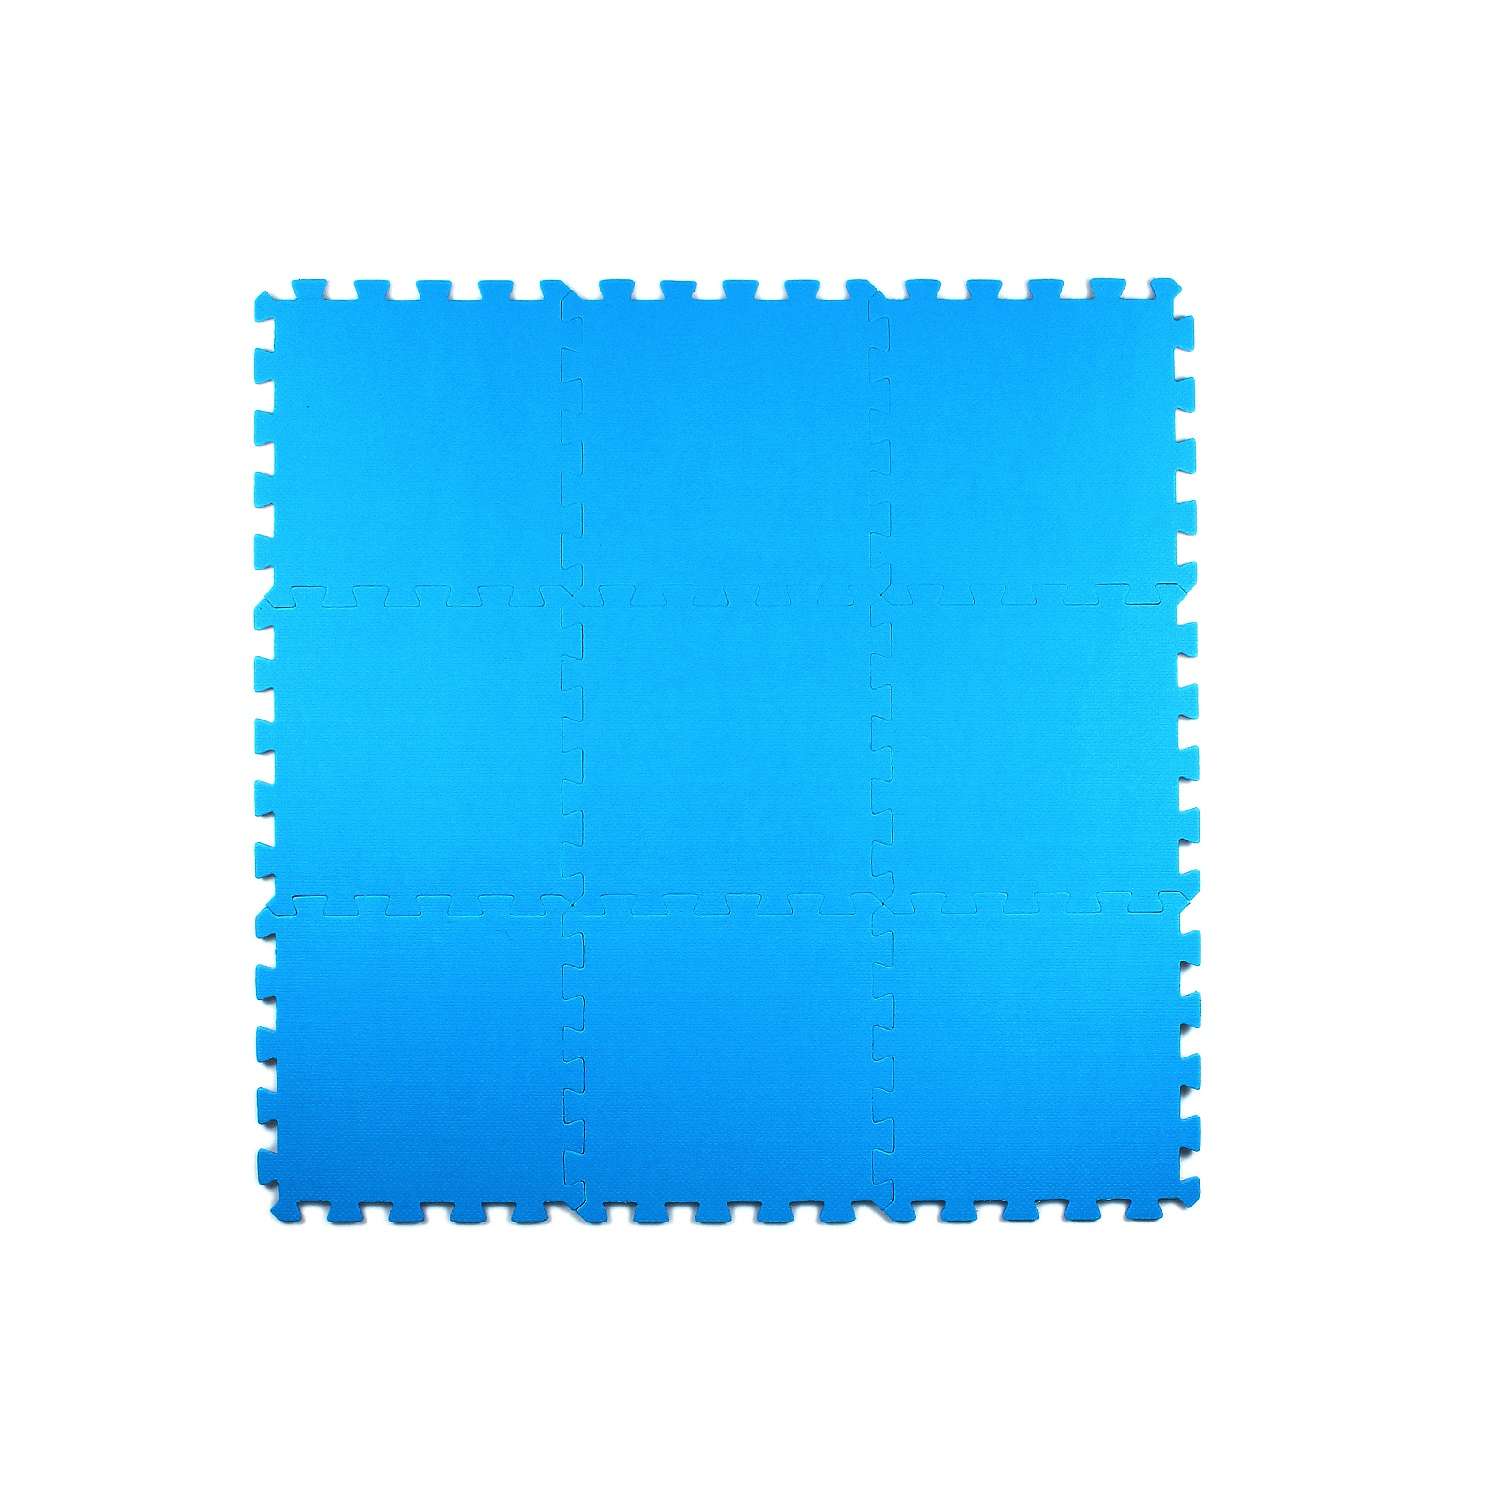 Развивающий детский коврик Eco cover игровой для ползания мягкий пол синий 33х33 - фото 2